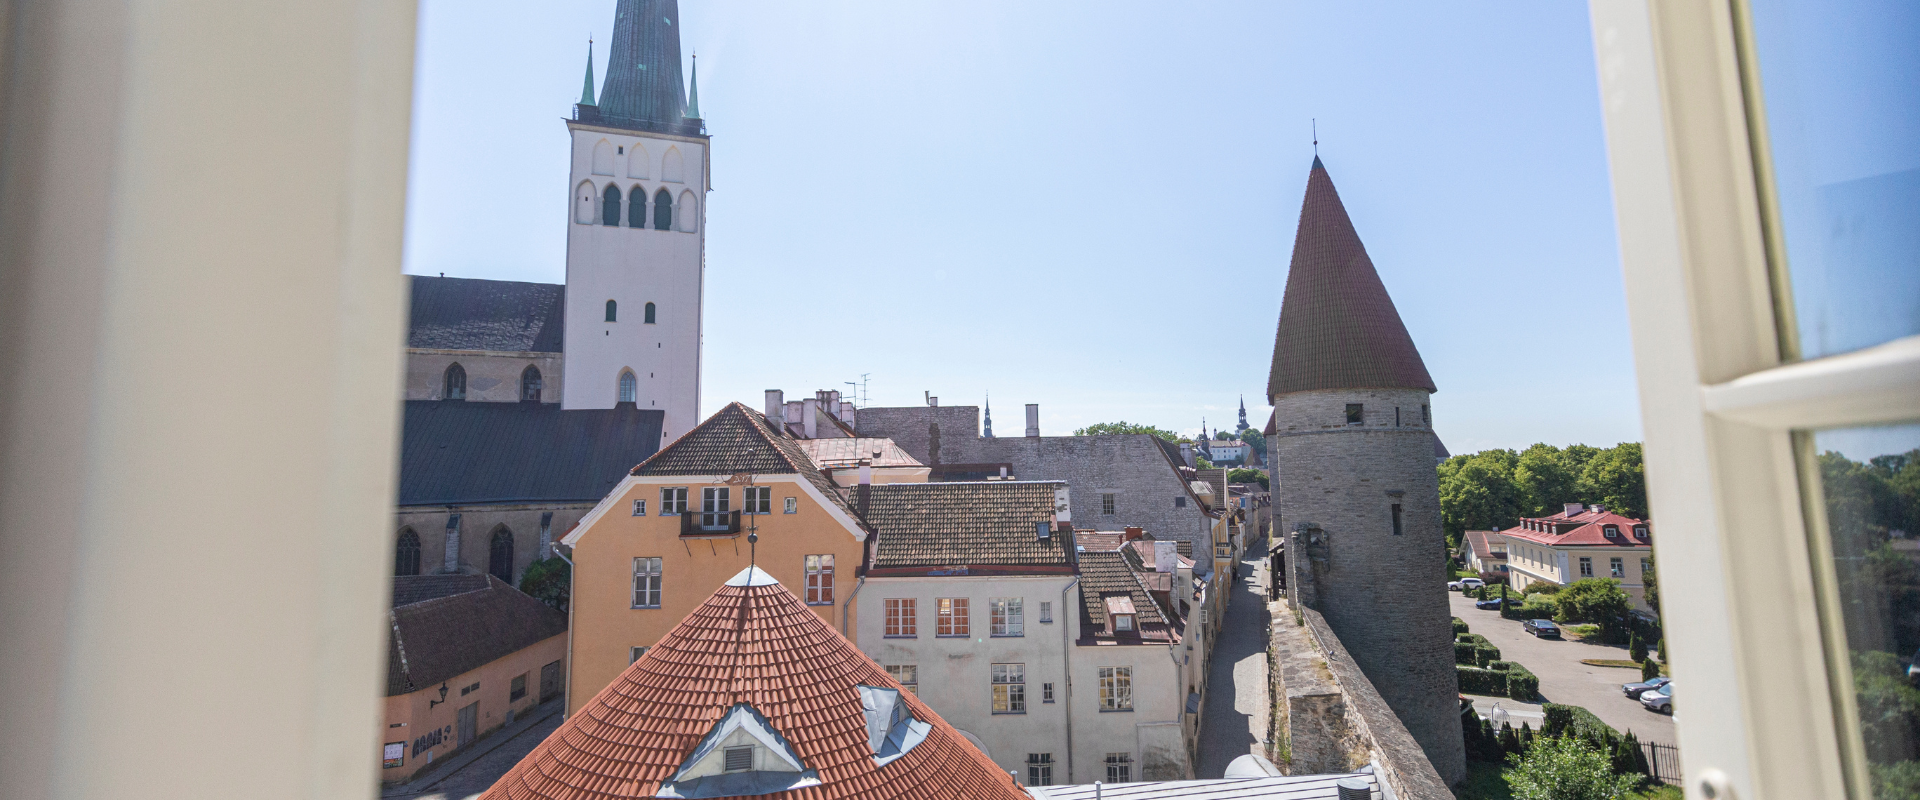 Rija Old Town Hotel, Blick auf die Altstadt von Tallinn